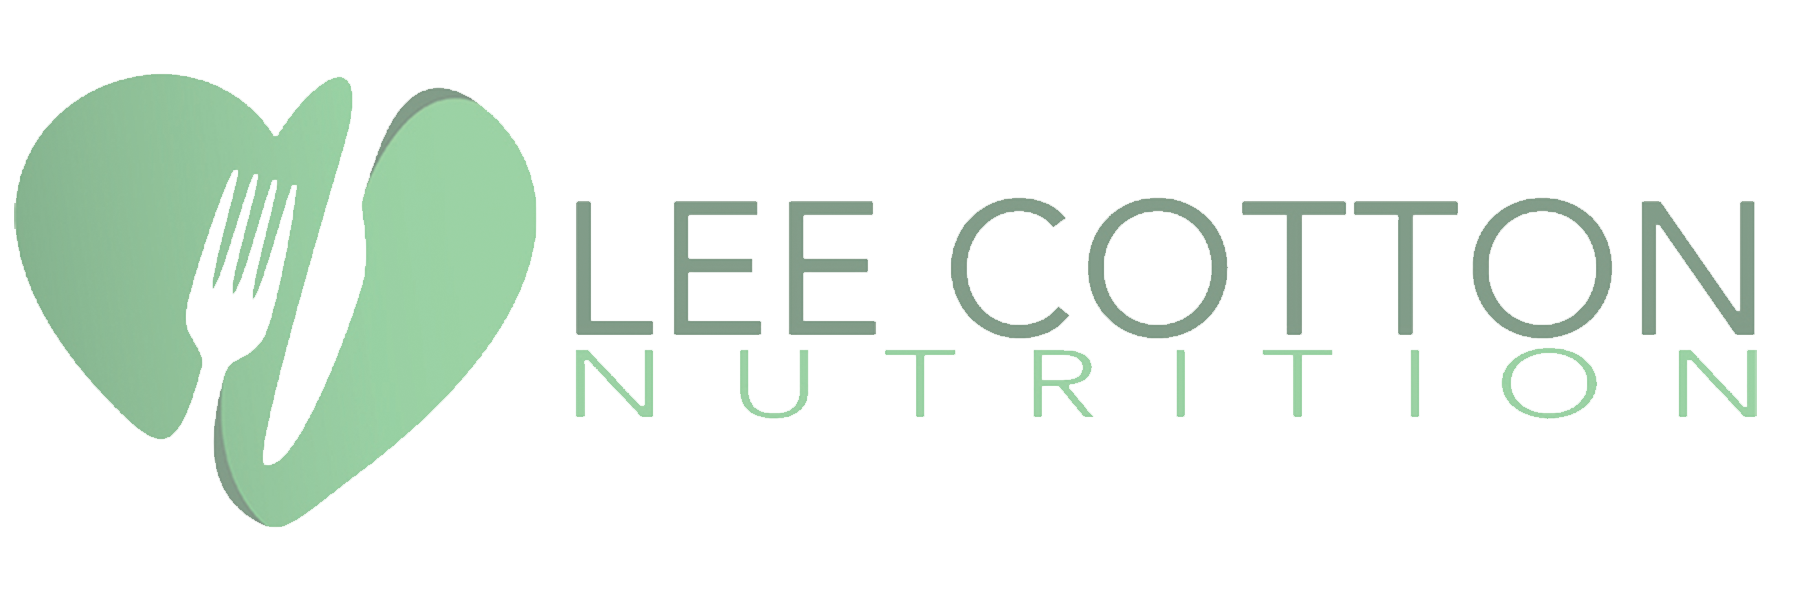 Lee Cotton Nutrition